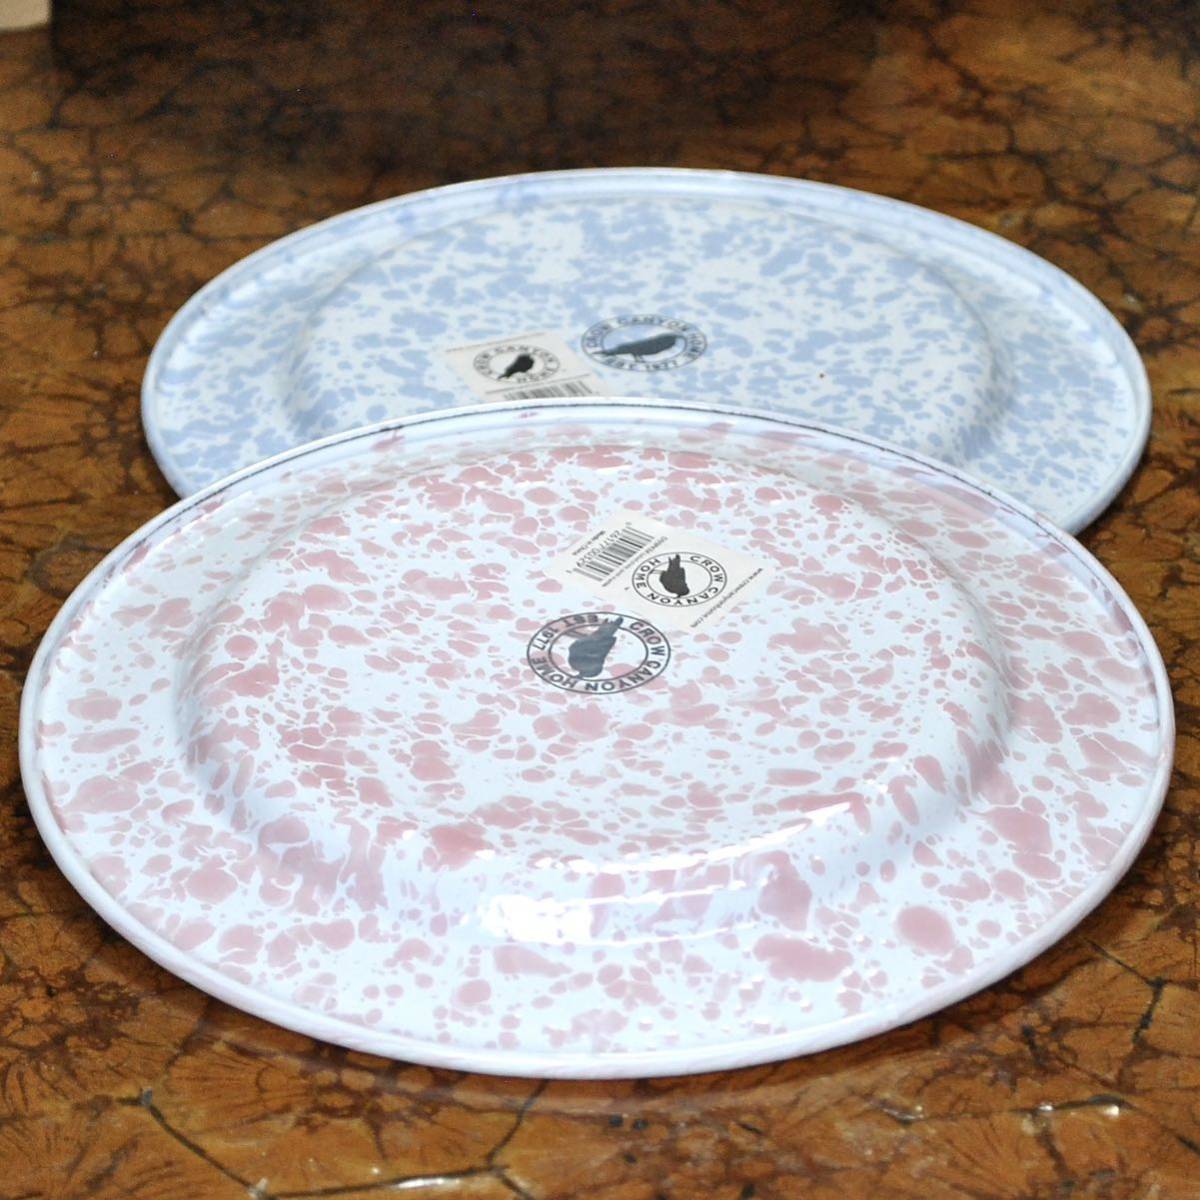  черный u Canyon Home CROW CANYON HOME *s блюдо сигнал low посуда Flat салат plate 2 -цветный набор [ baby голубой & розовый ] эмаль посуда 